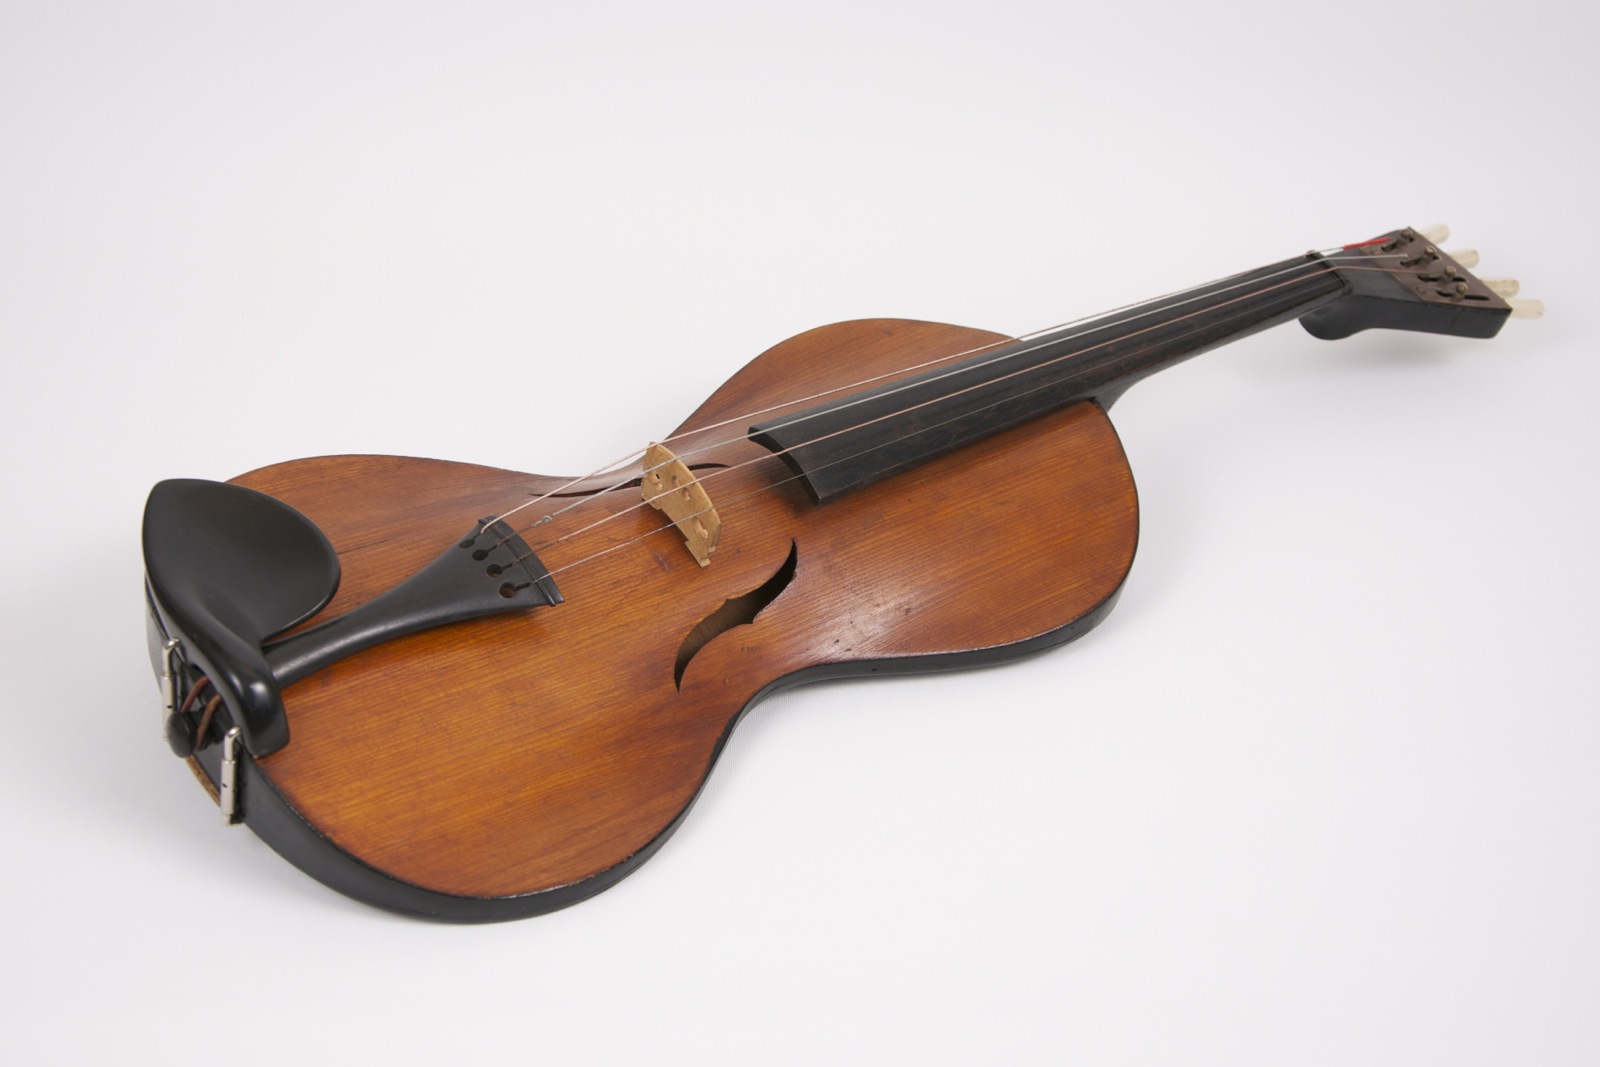 1676-violinda-31